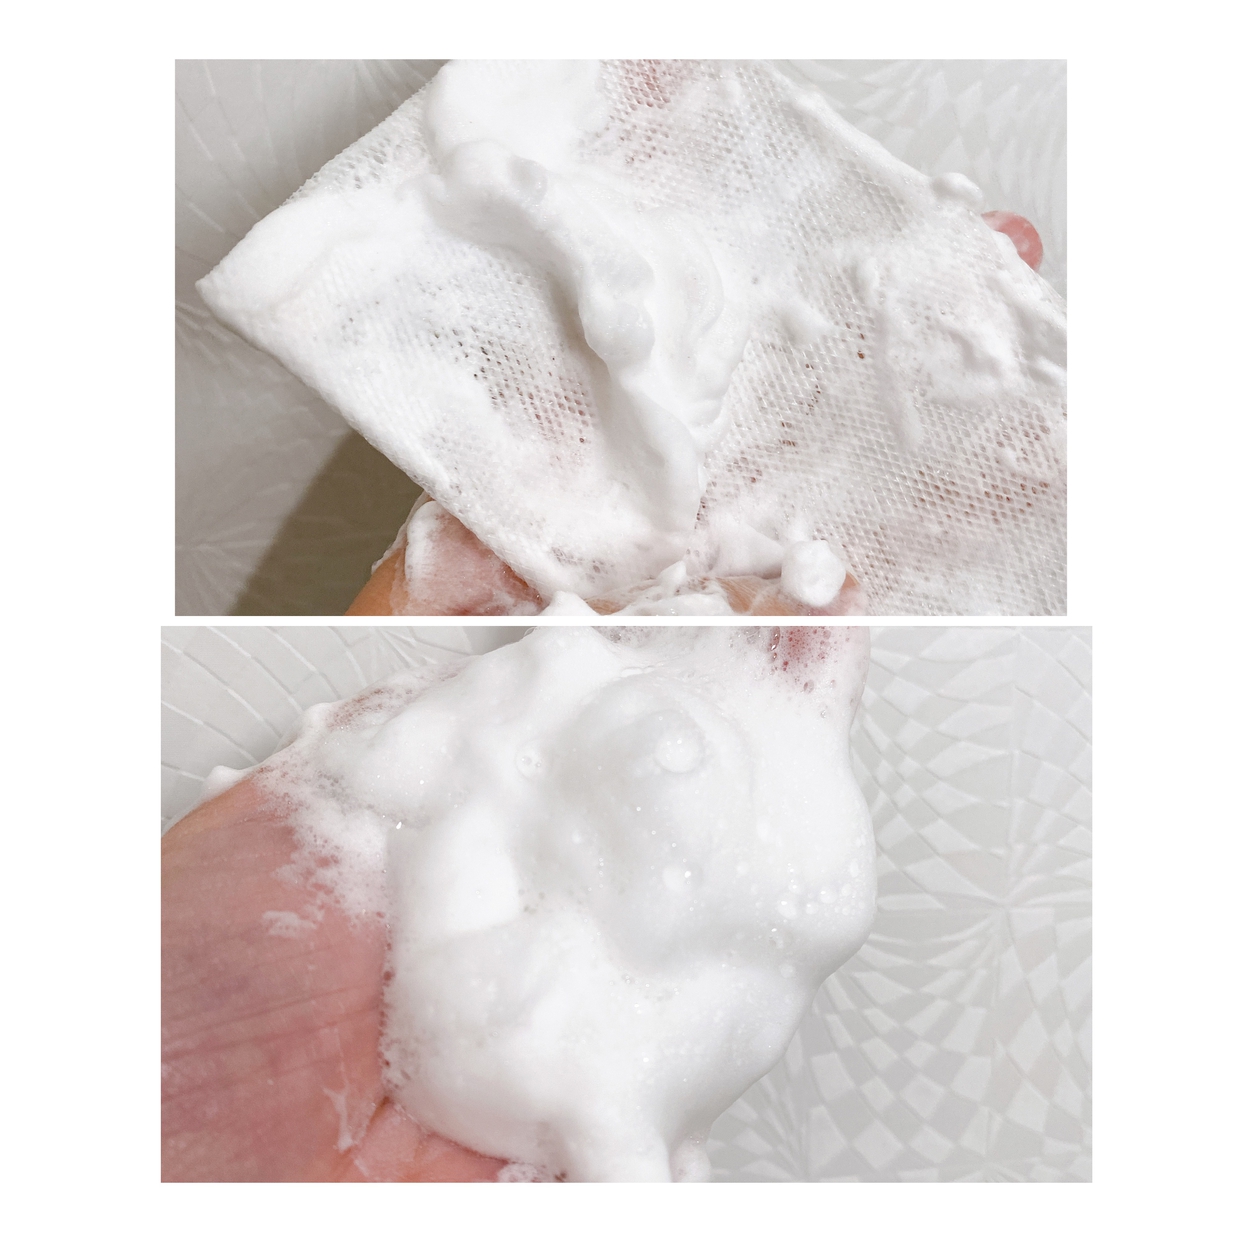 carenainai(ケアナイナイ) 酵素洗顔パウダーを使ったちーこすさんのクチコミ画像4